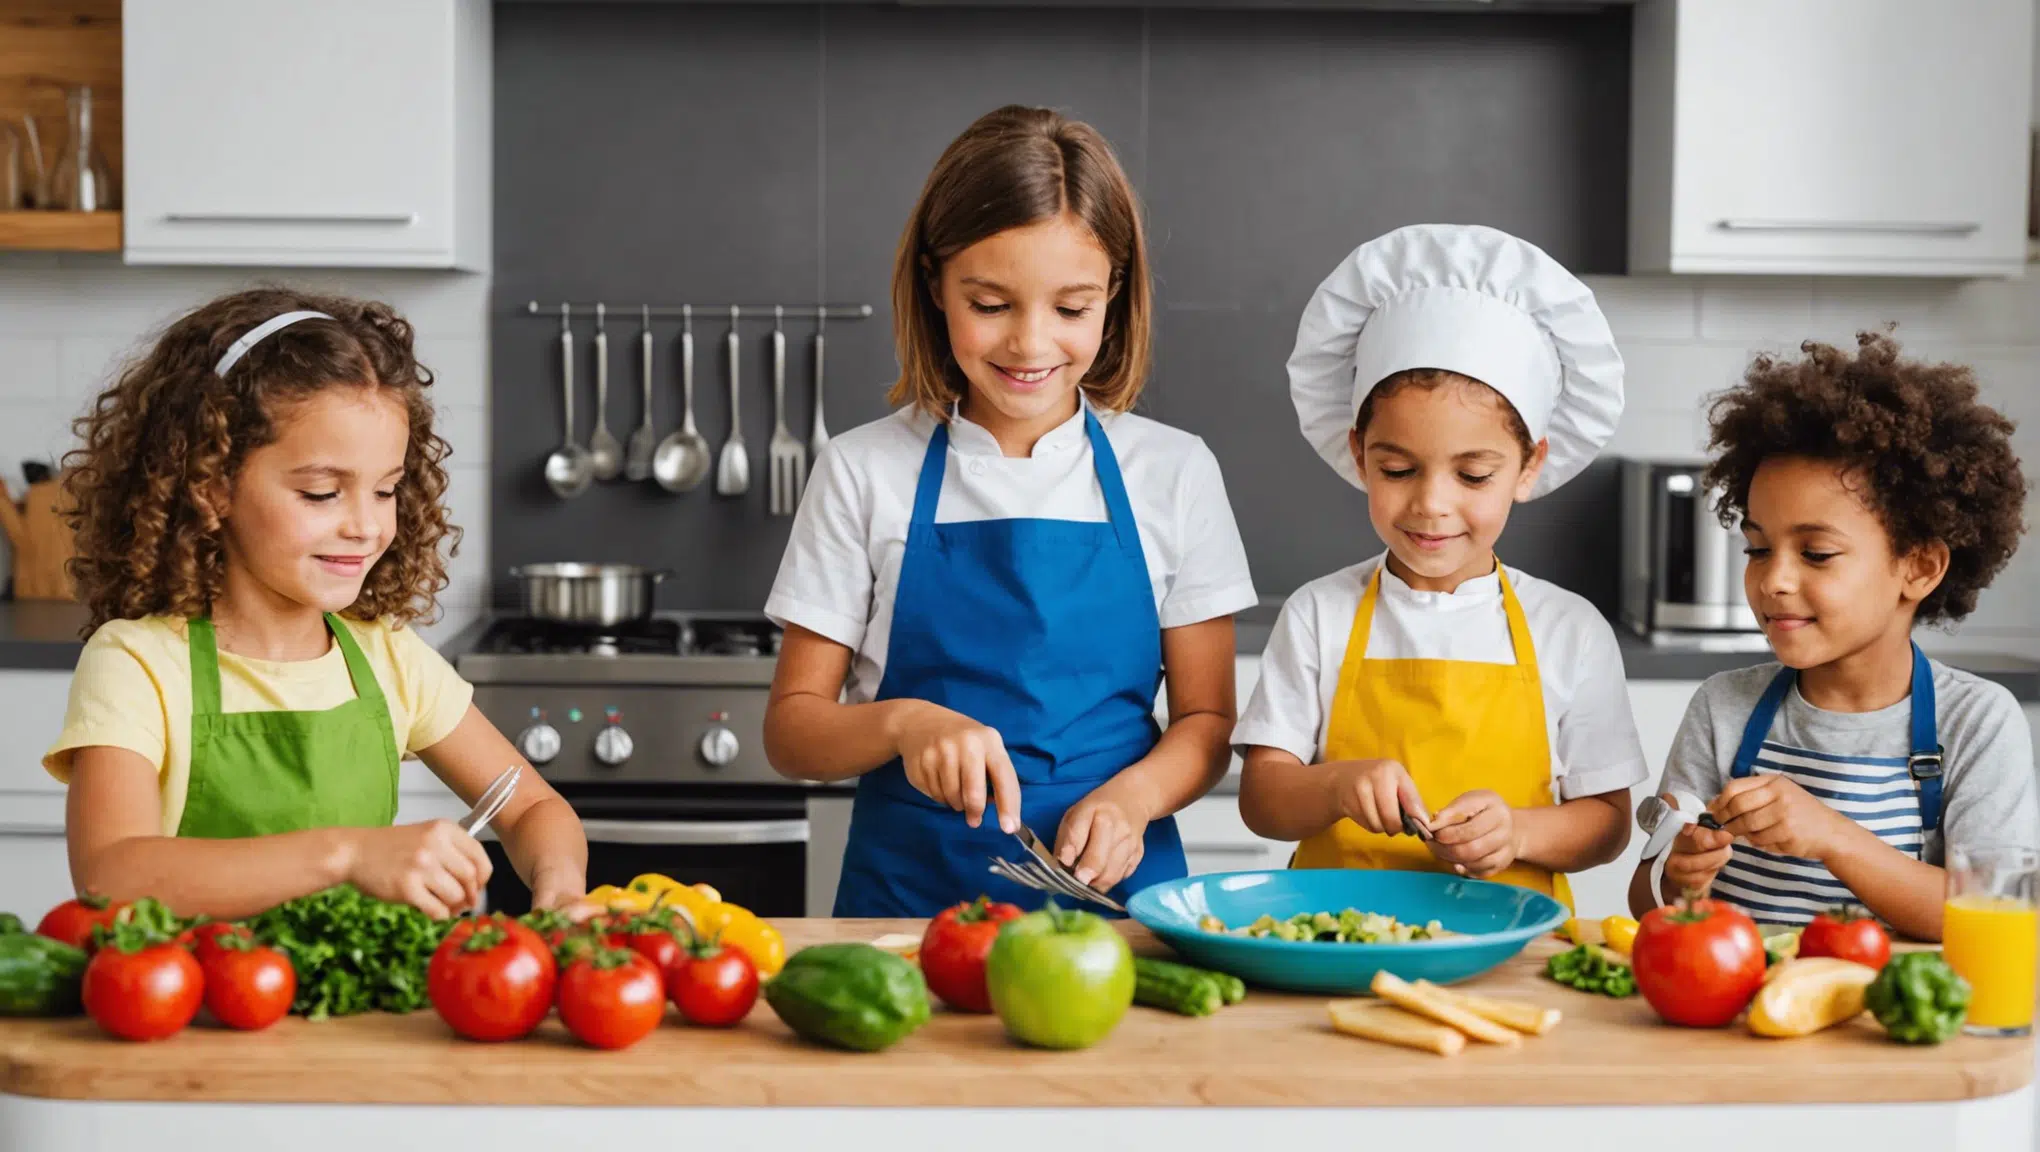 découvrez des astuces ludiques et simples pour rendre la cuisine amusante pour vos enfants et votre famille. recettes, idées créatives et moments de partage à la clé !